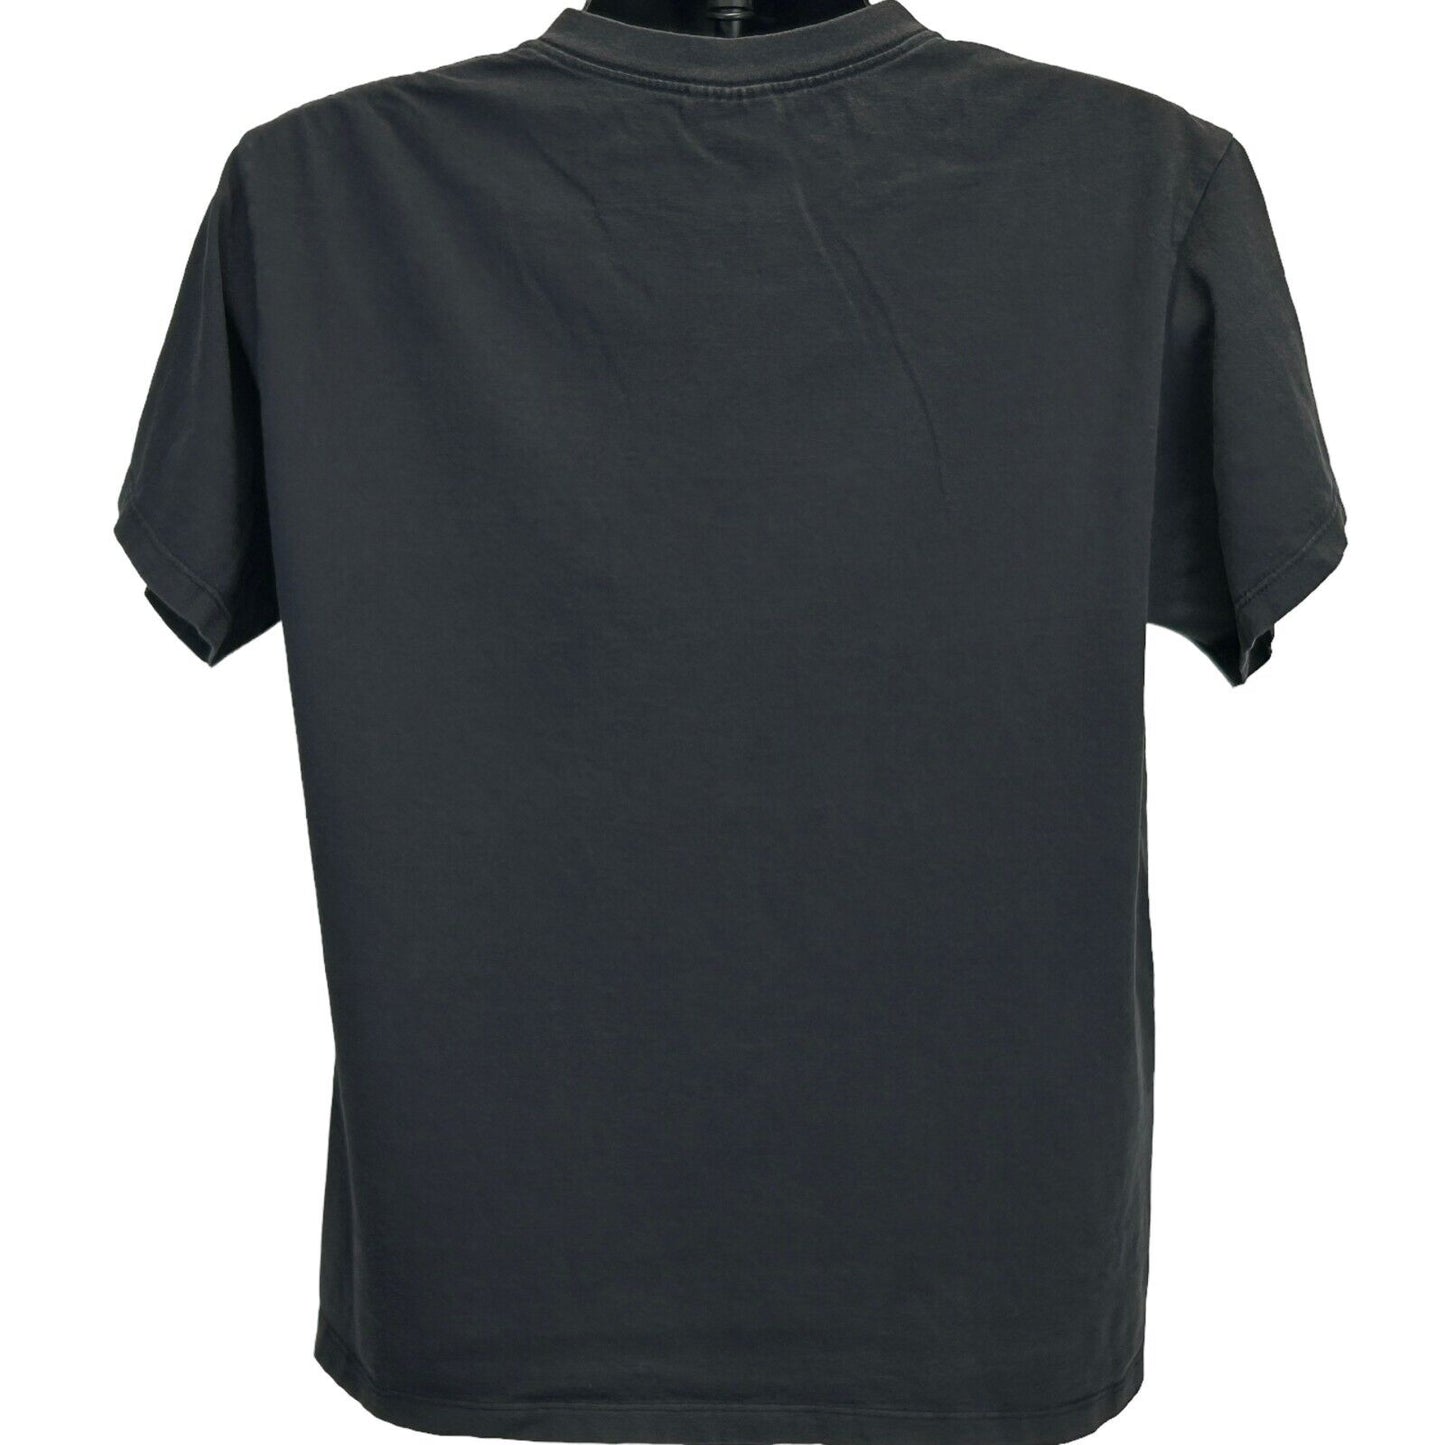 阿迪达斯复古 90 年代 T 恤短袖黑色美国制造 T 恤中号